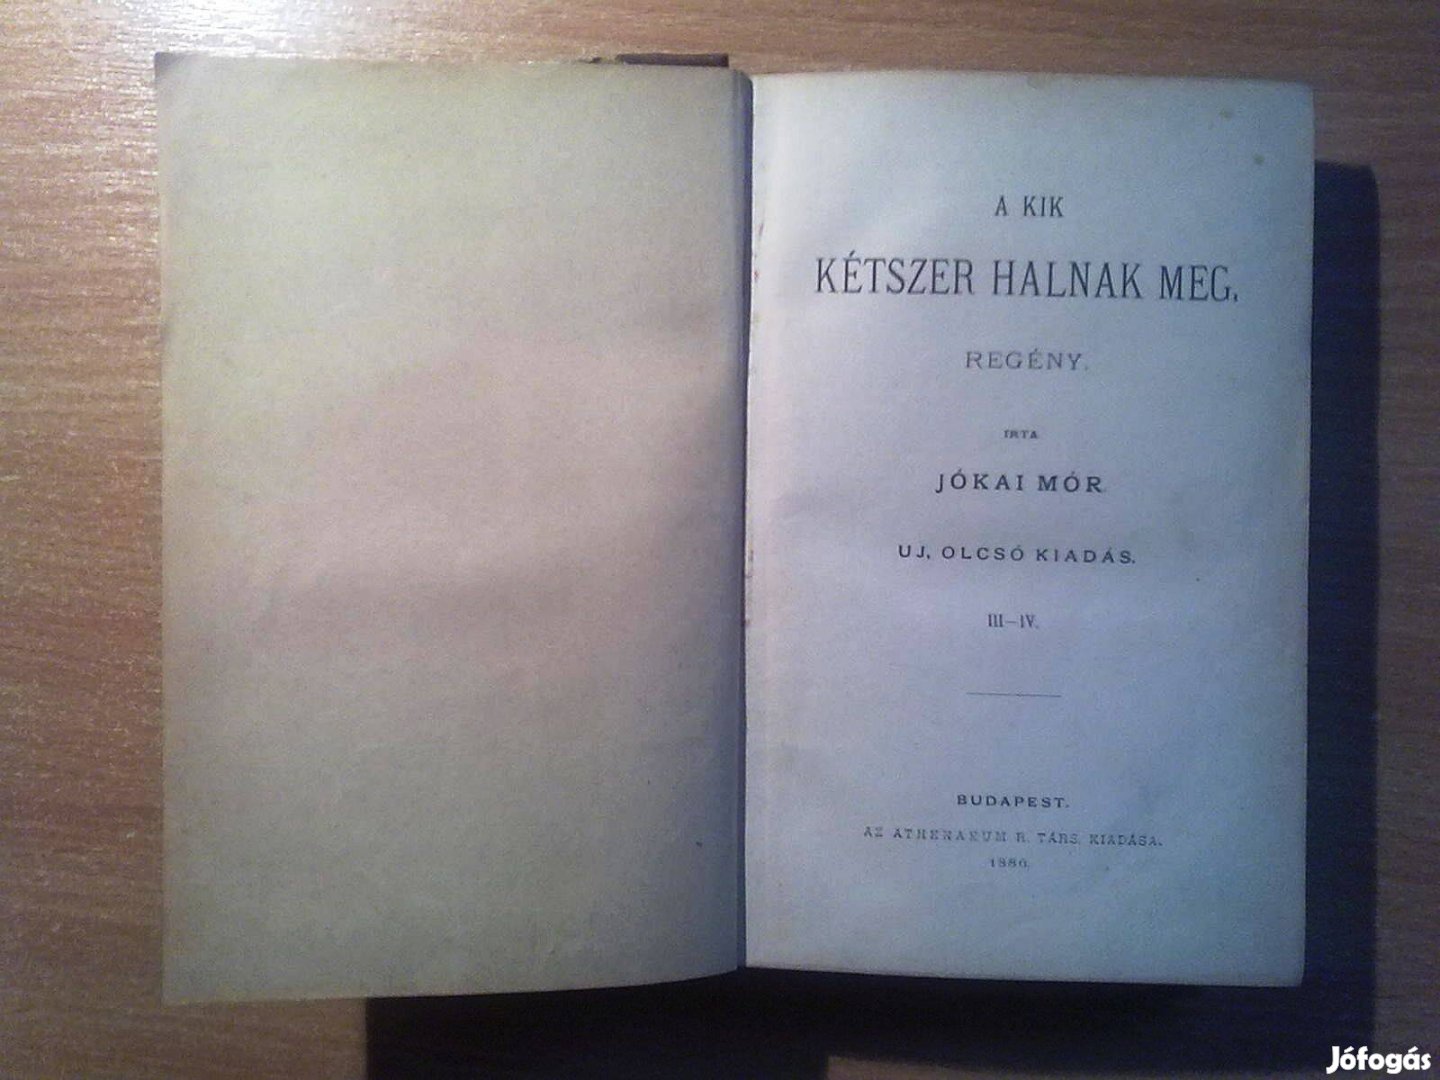 Jókai Mór: A kik kétszer halnak meg. (Athenaeum, 1886-os kiadás)